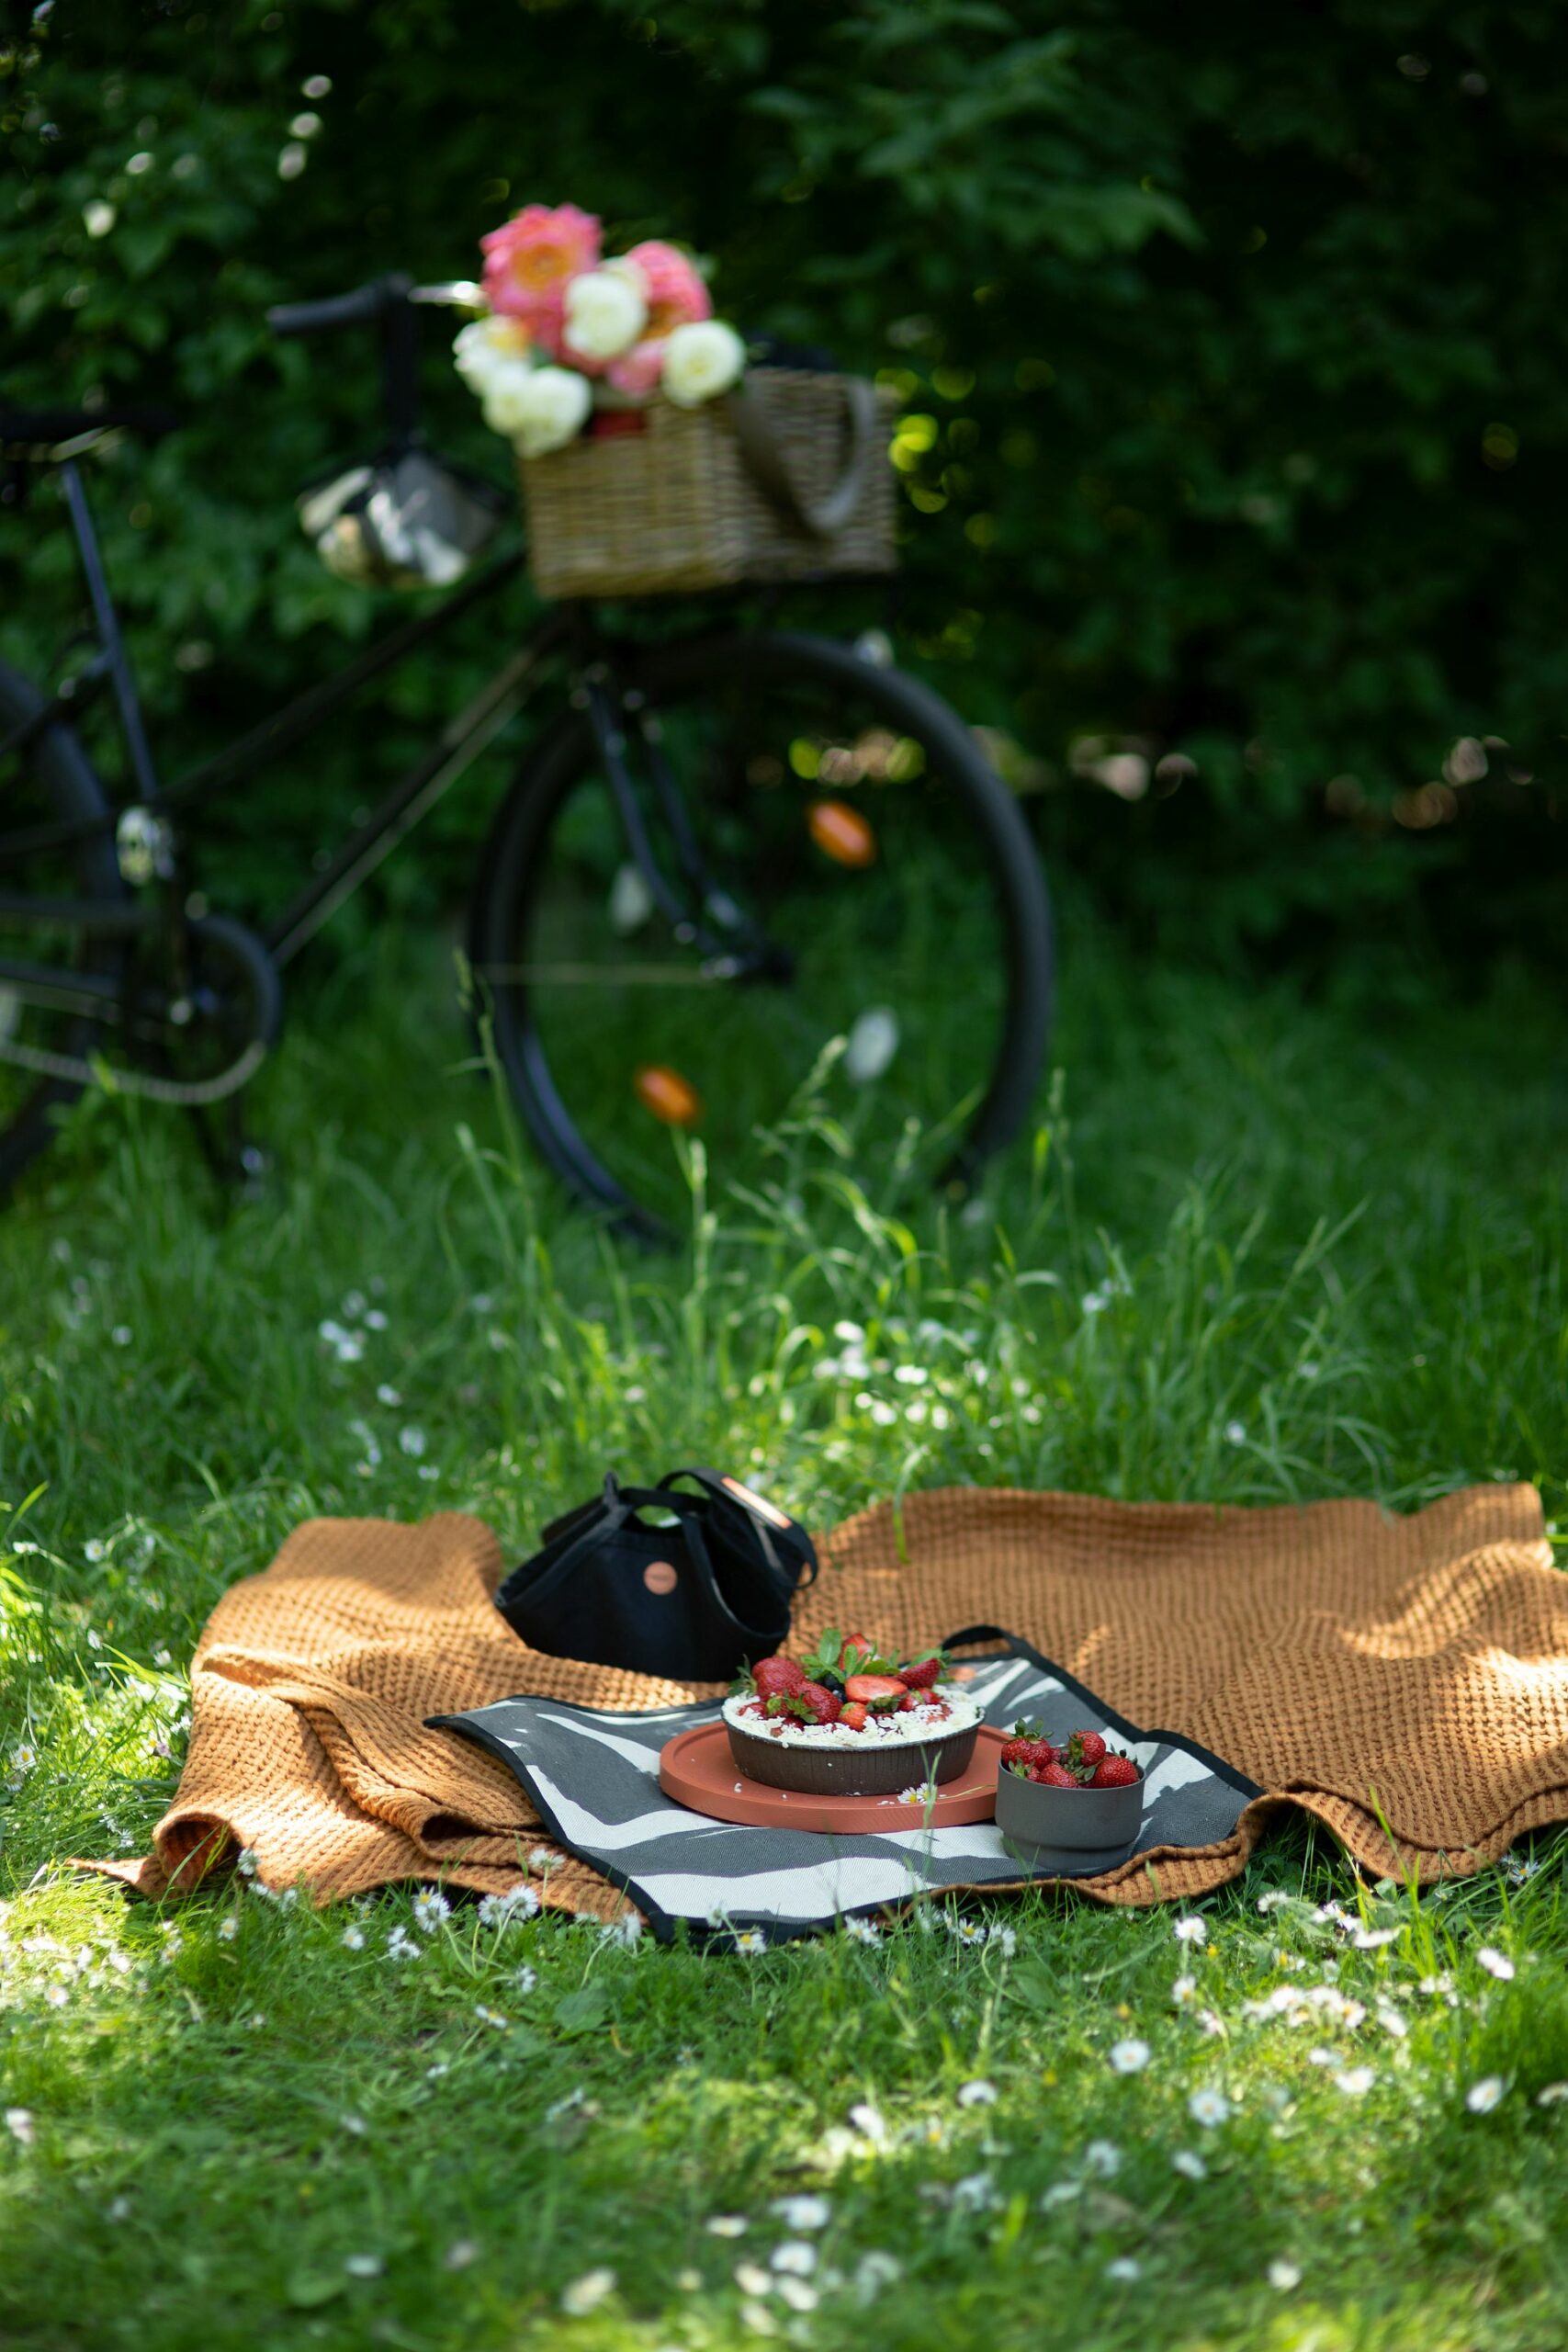 Piknik na trawie. Na trawie leży miedziany pled wafelkowy, na nim rozłożone nosidło piknikowe jako podkładka pod okrągłą, pomarańczową tacę z ciastem truskawkowym.